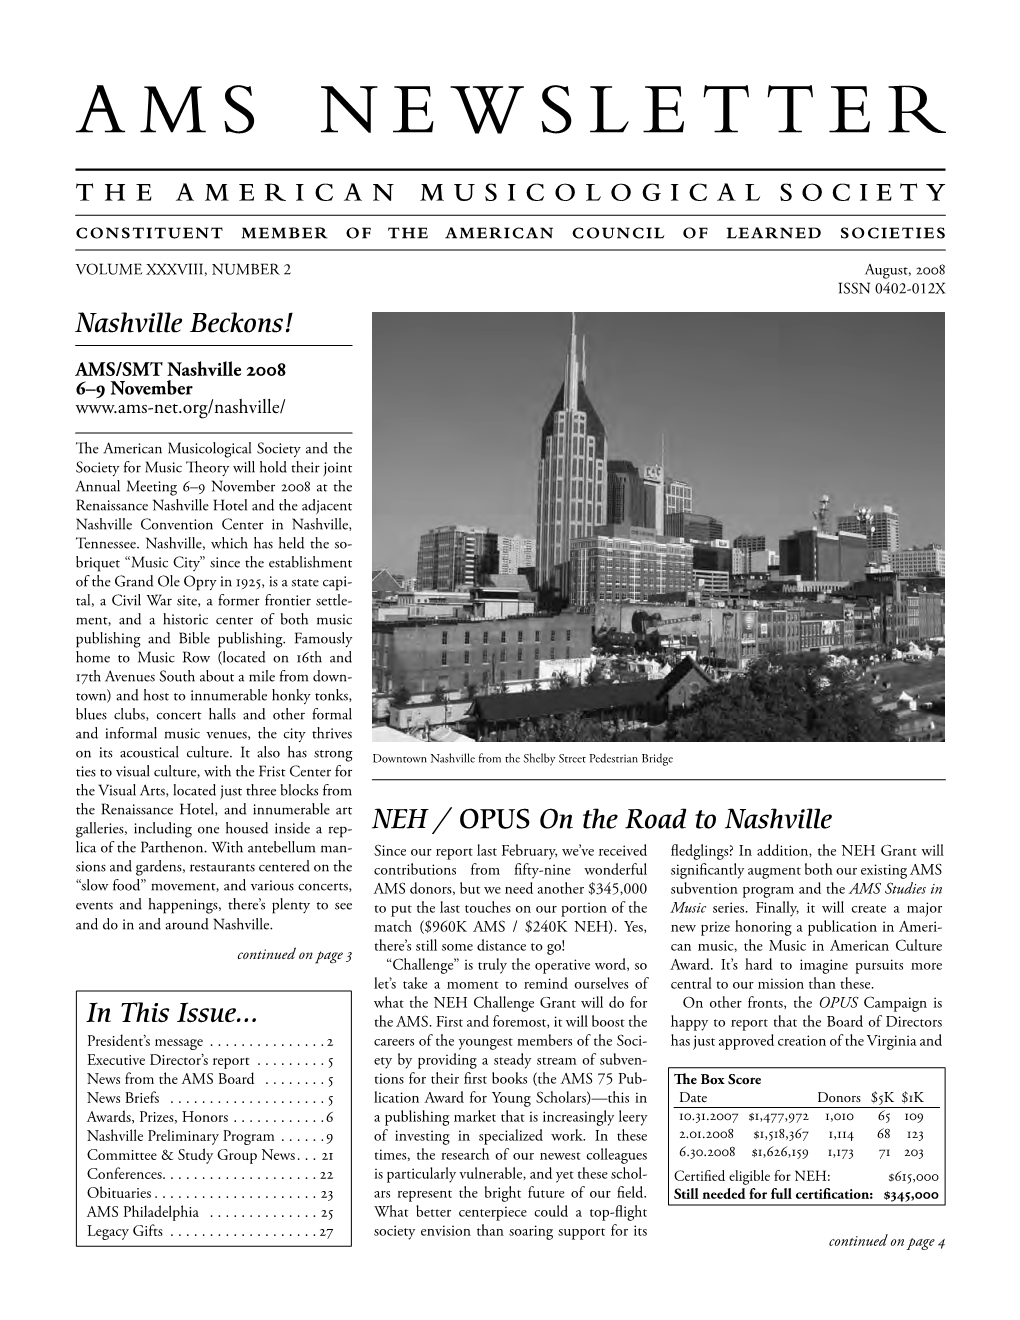 AMS Newsletter August 2008